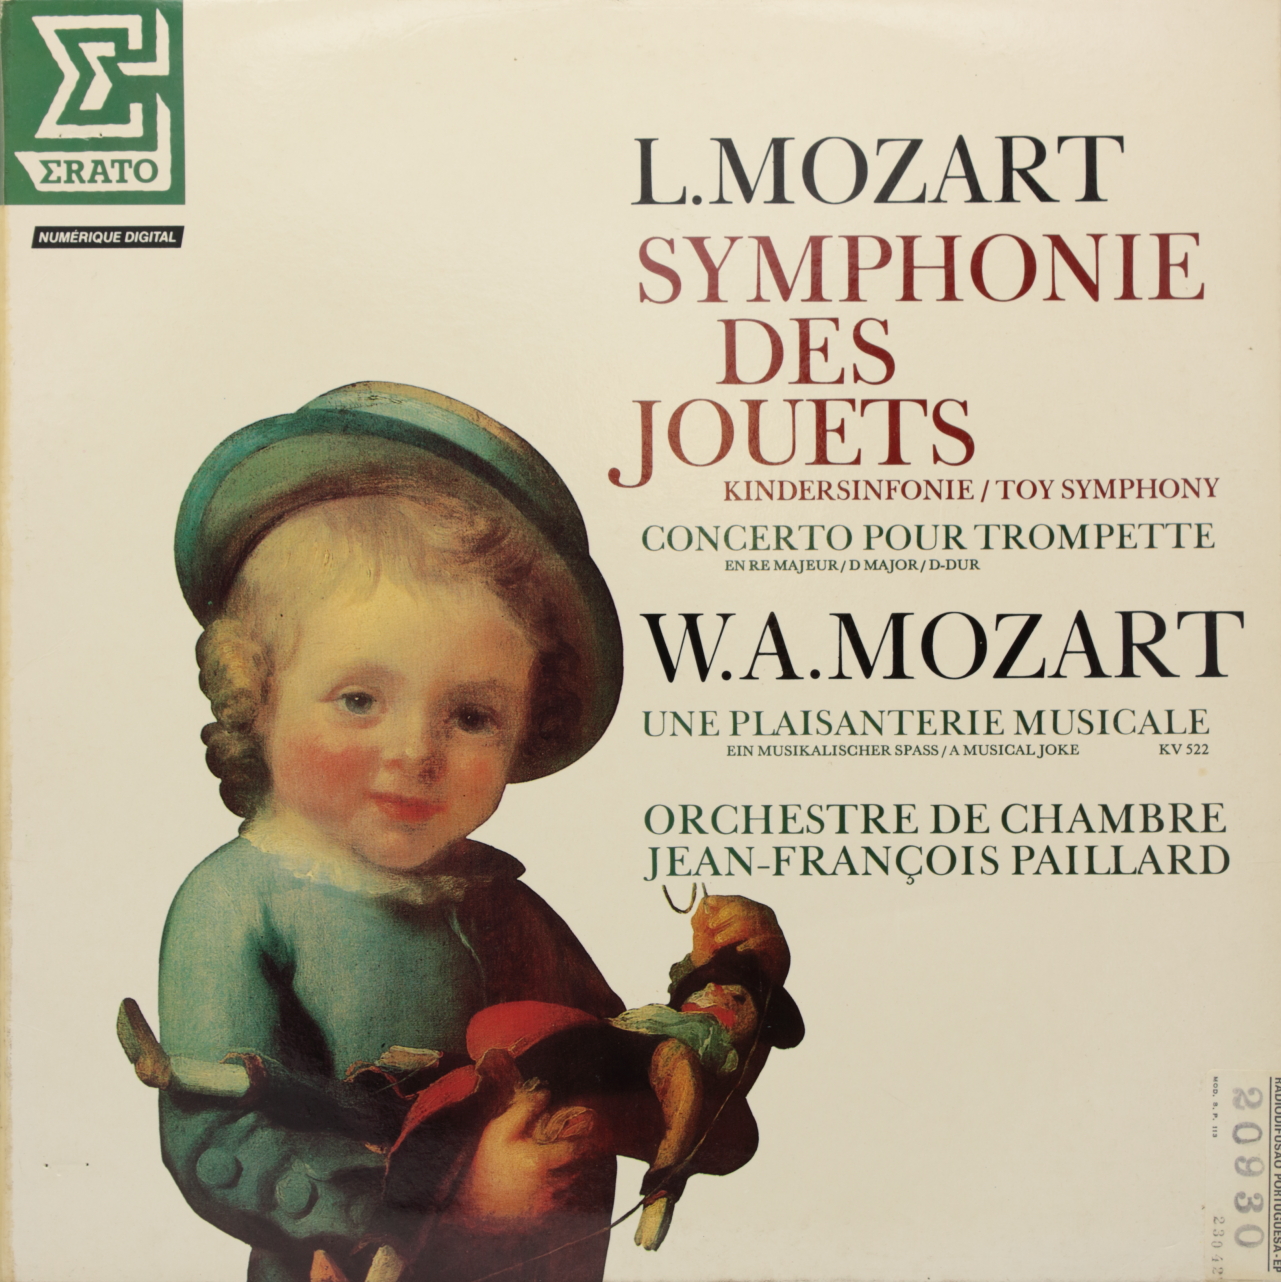 Mozart, Leopold: Symphonie des jouets / Mozart: Concerto pour trompette